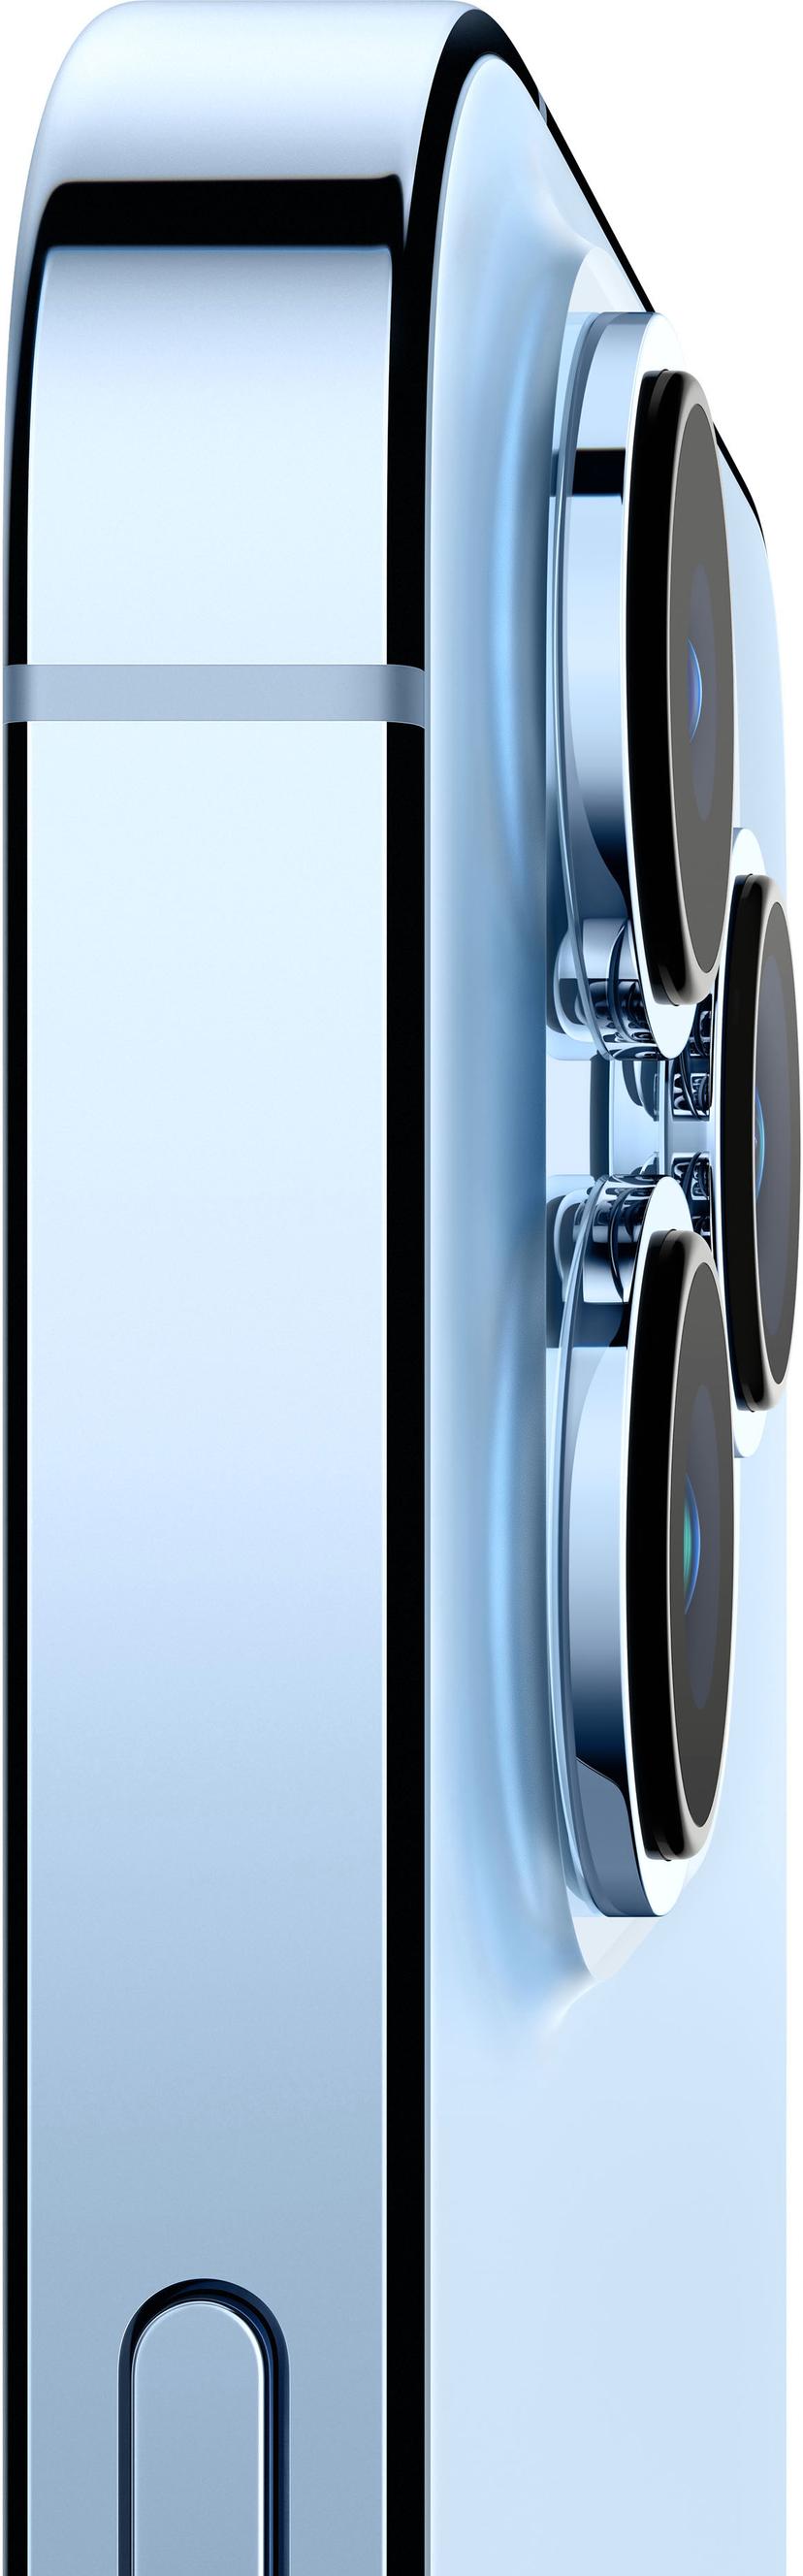 Apple iPhone 13 Pro Max 256GB Sierrablå